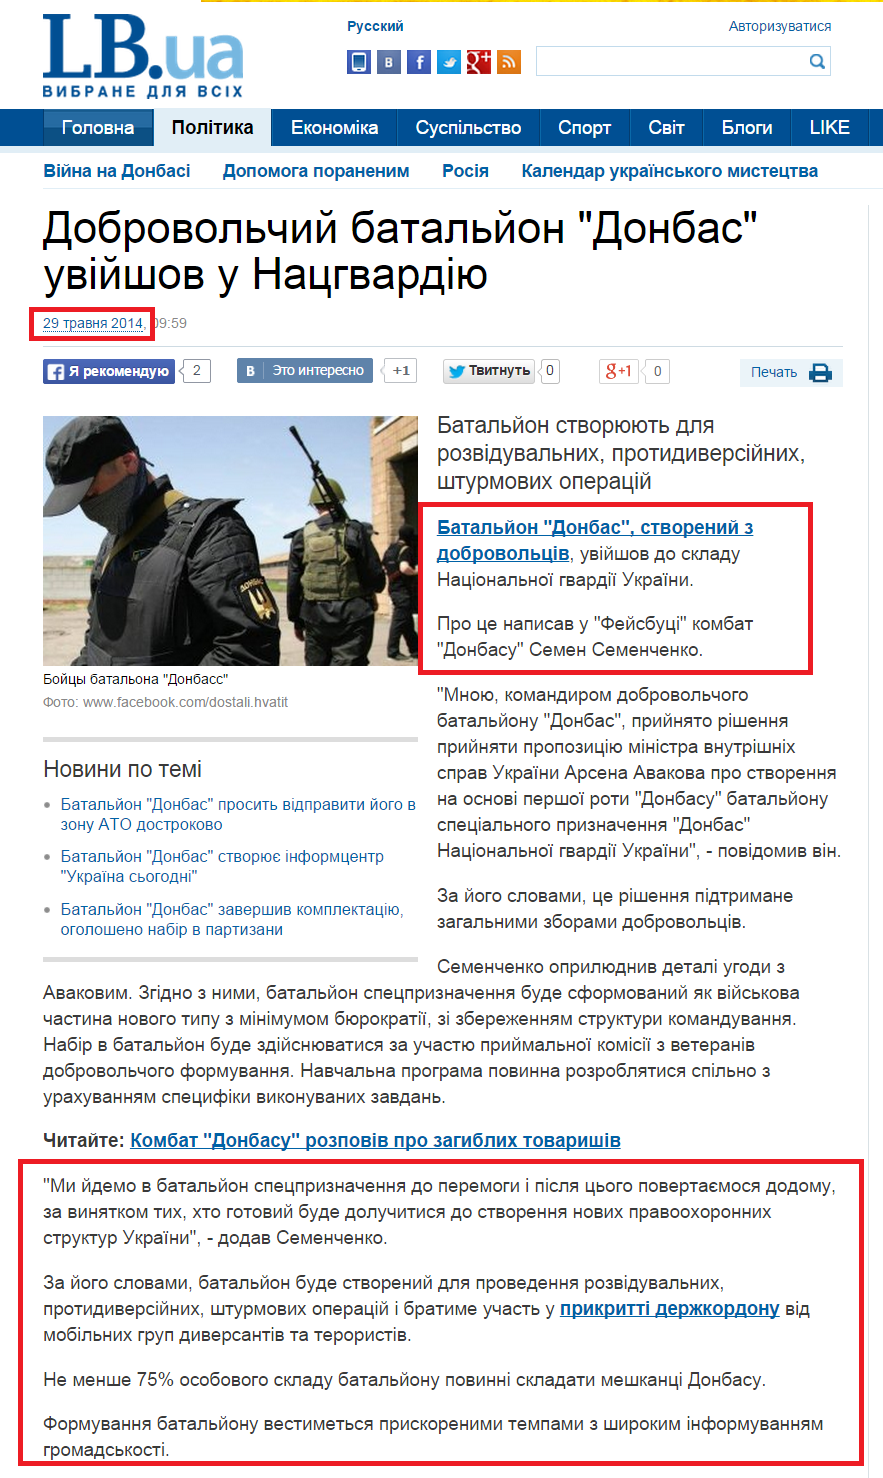 http://ukr.lb.ua/news/2014/05/29/268160_dobrovolcheskiy_batalon_donbass.html